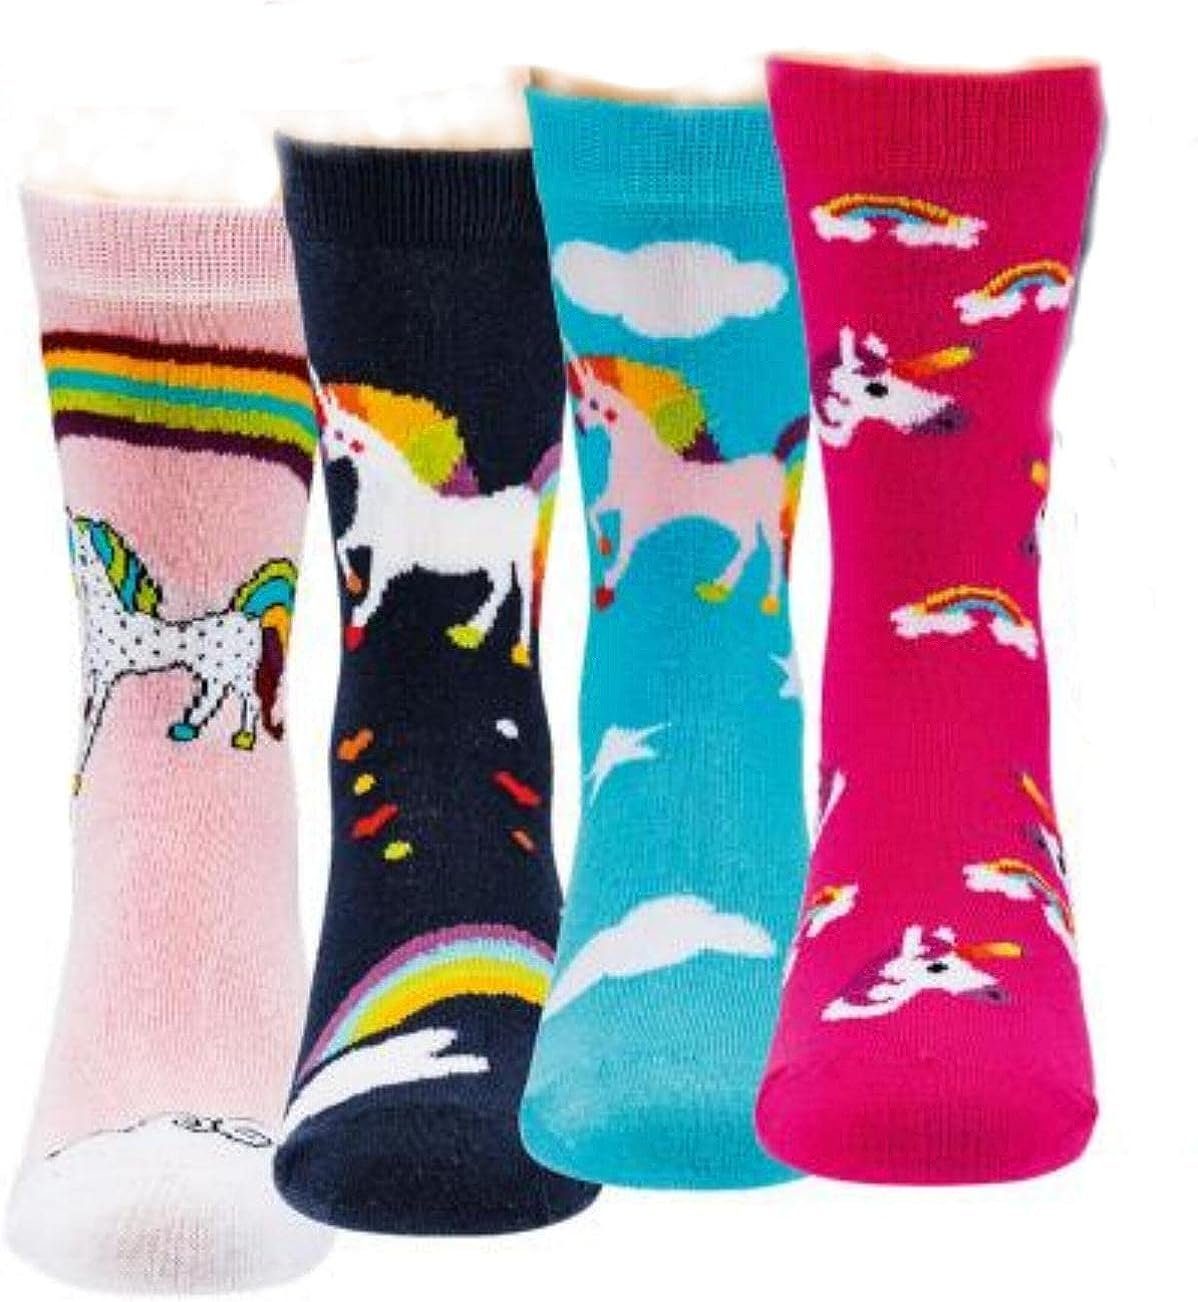 TippTexx 24 ABS-Socken 6 Paar Kinder Stoppersocken, Strümpfe mit Noppensohle, viele Muster Einhorn